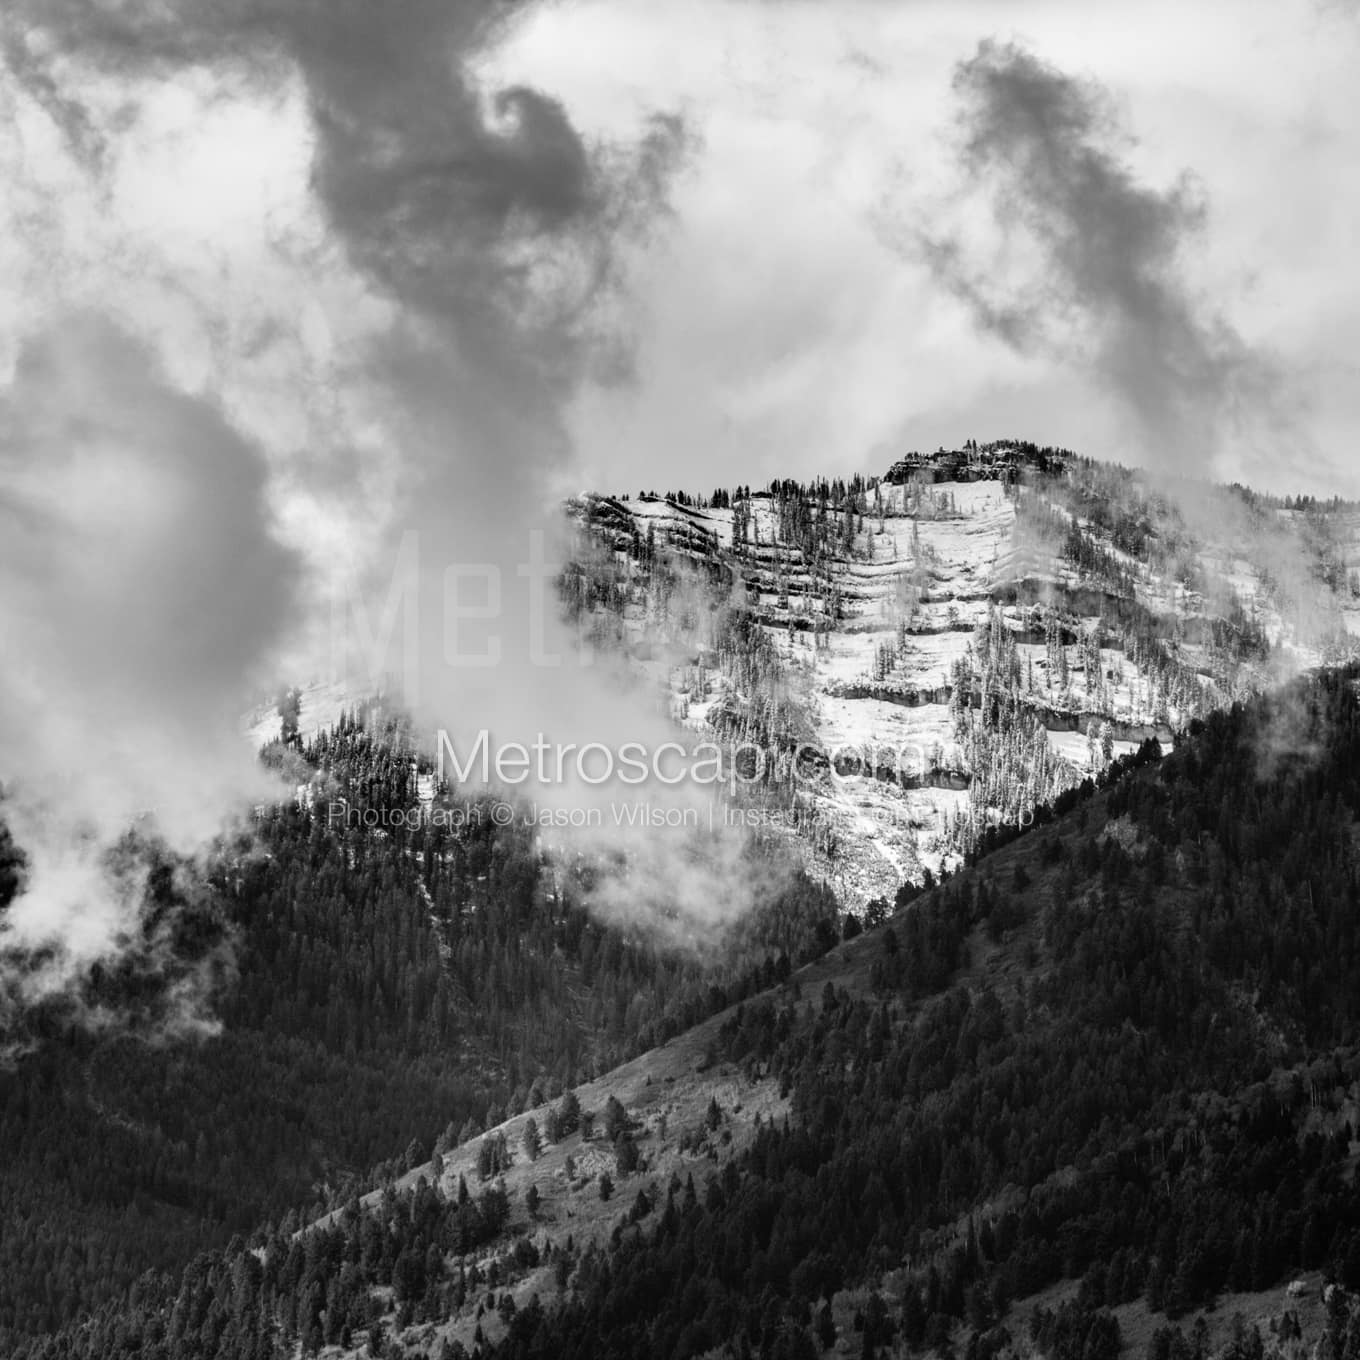 Jackson Hole Black & White Landscape Photography